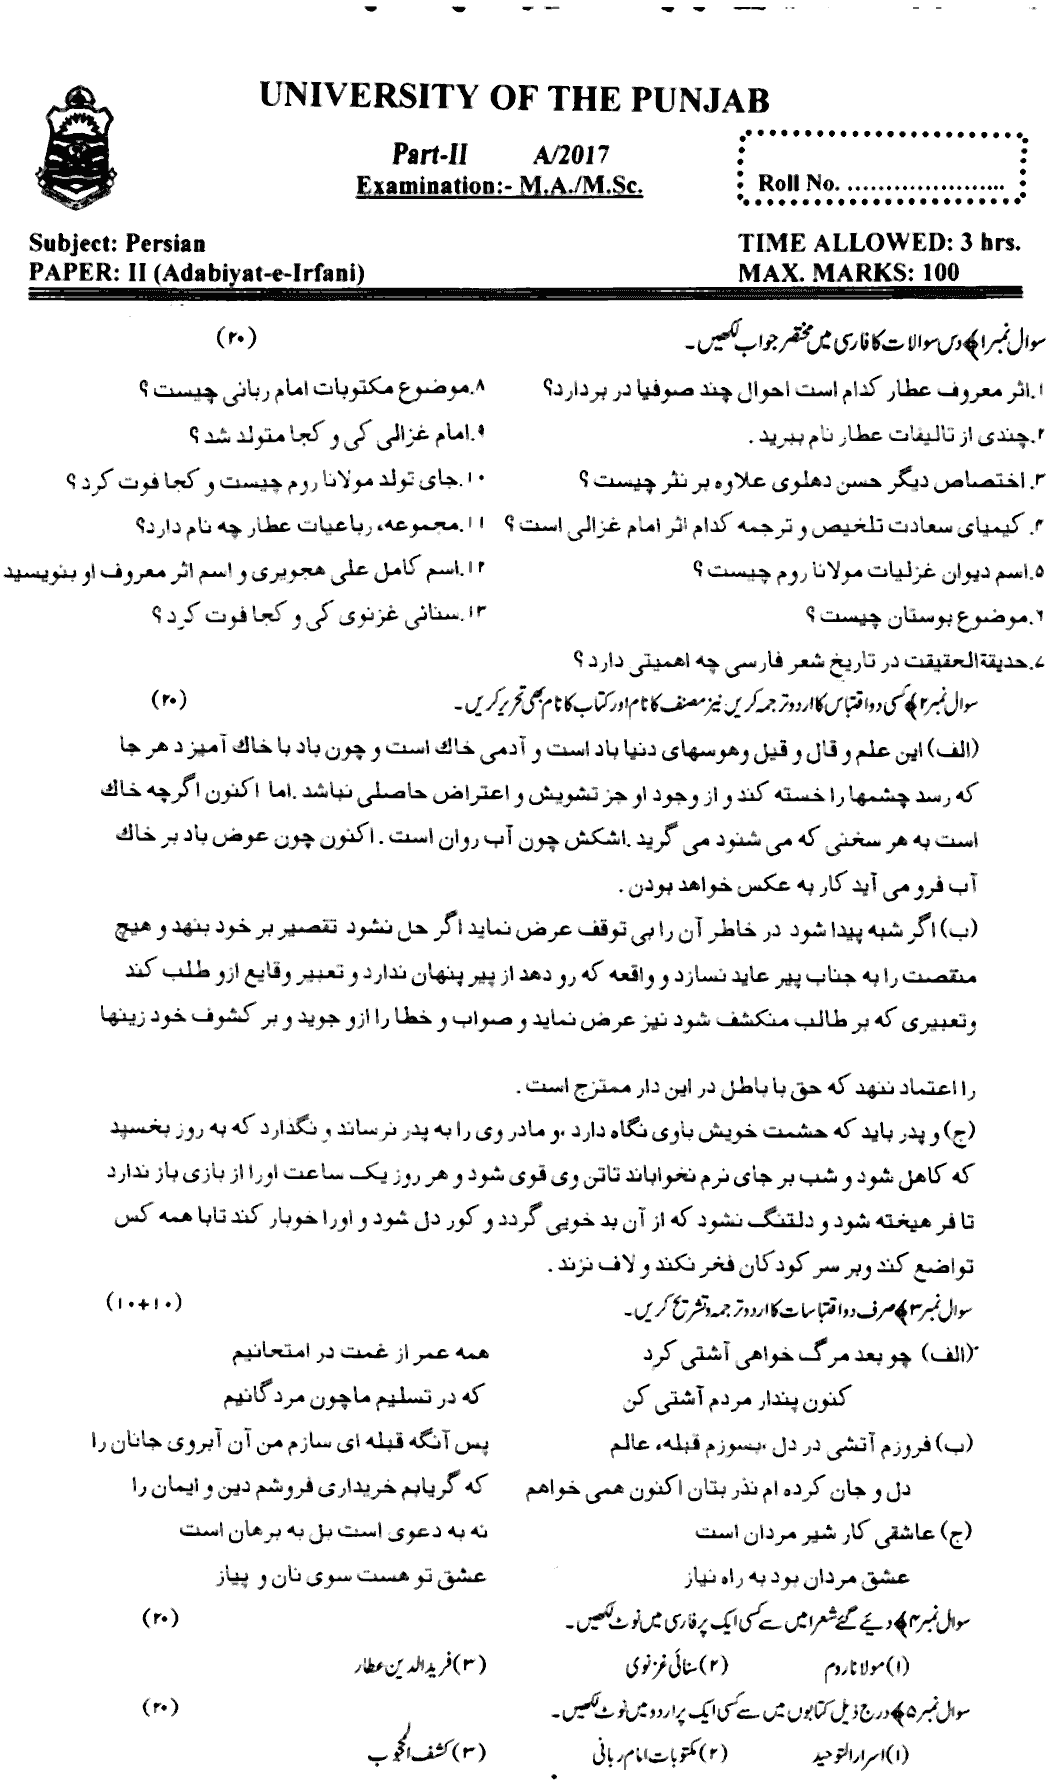 Ma Part 2 Persian Adabiyat E Irfani Past Paper 2017 Punjab University